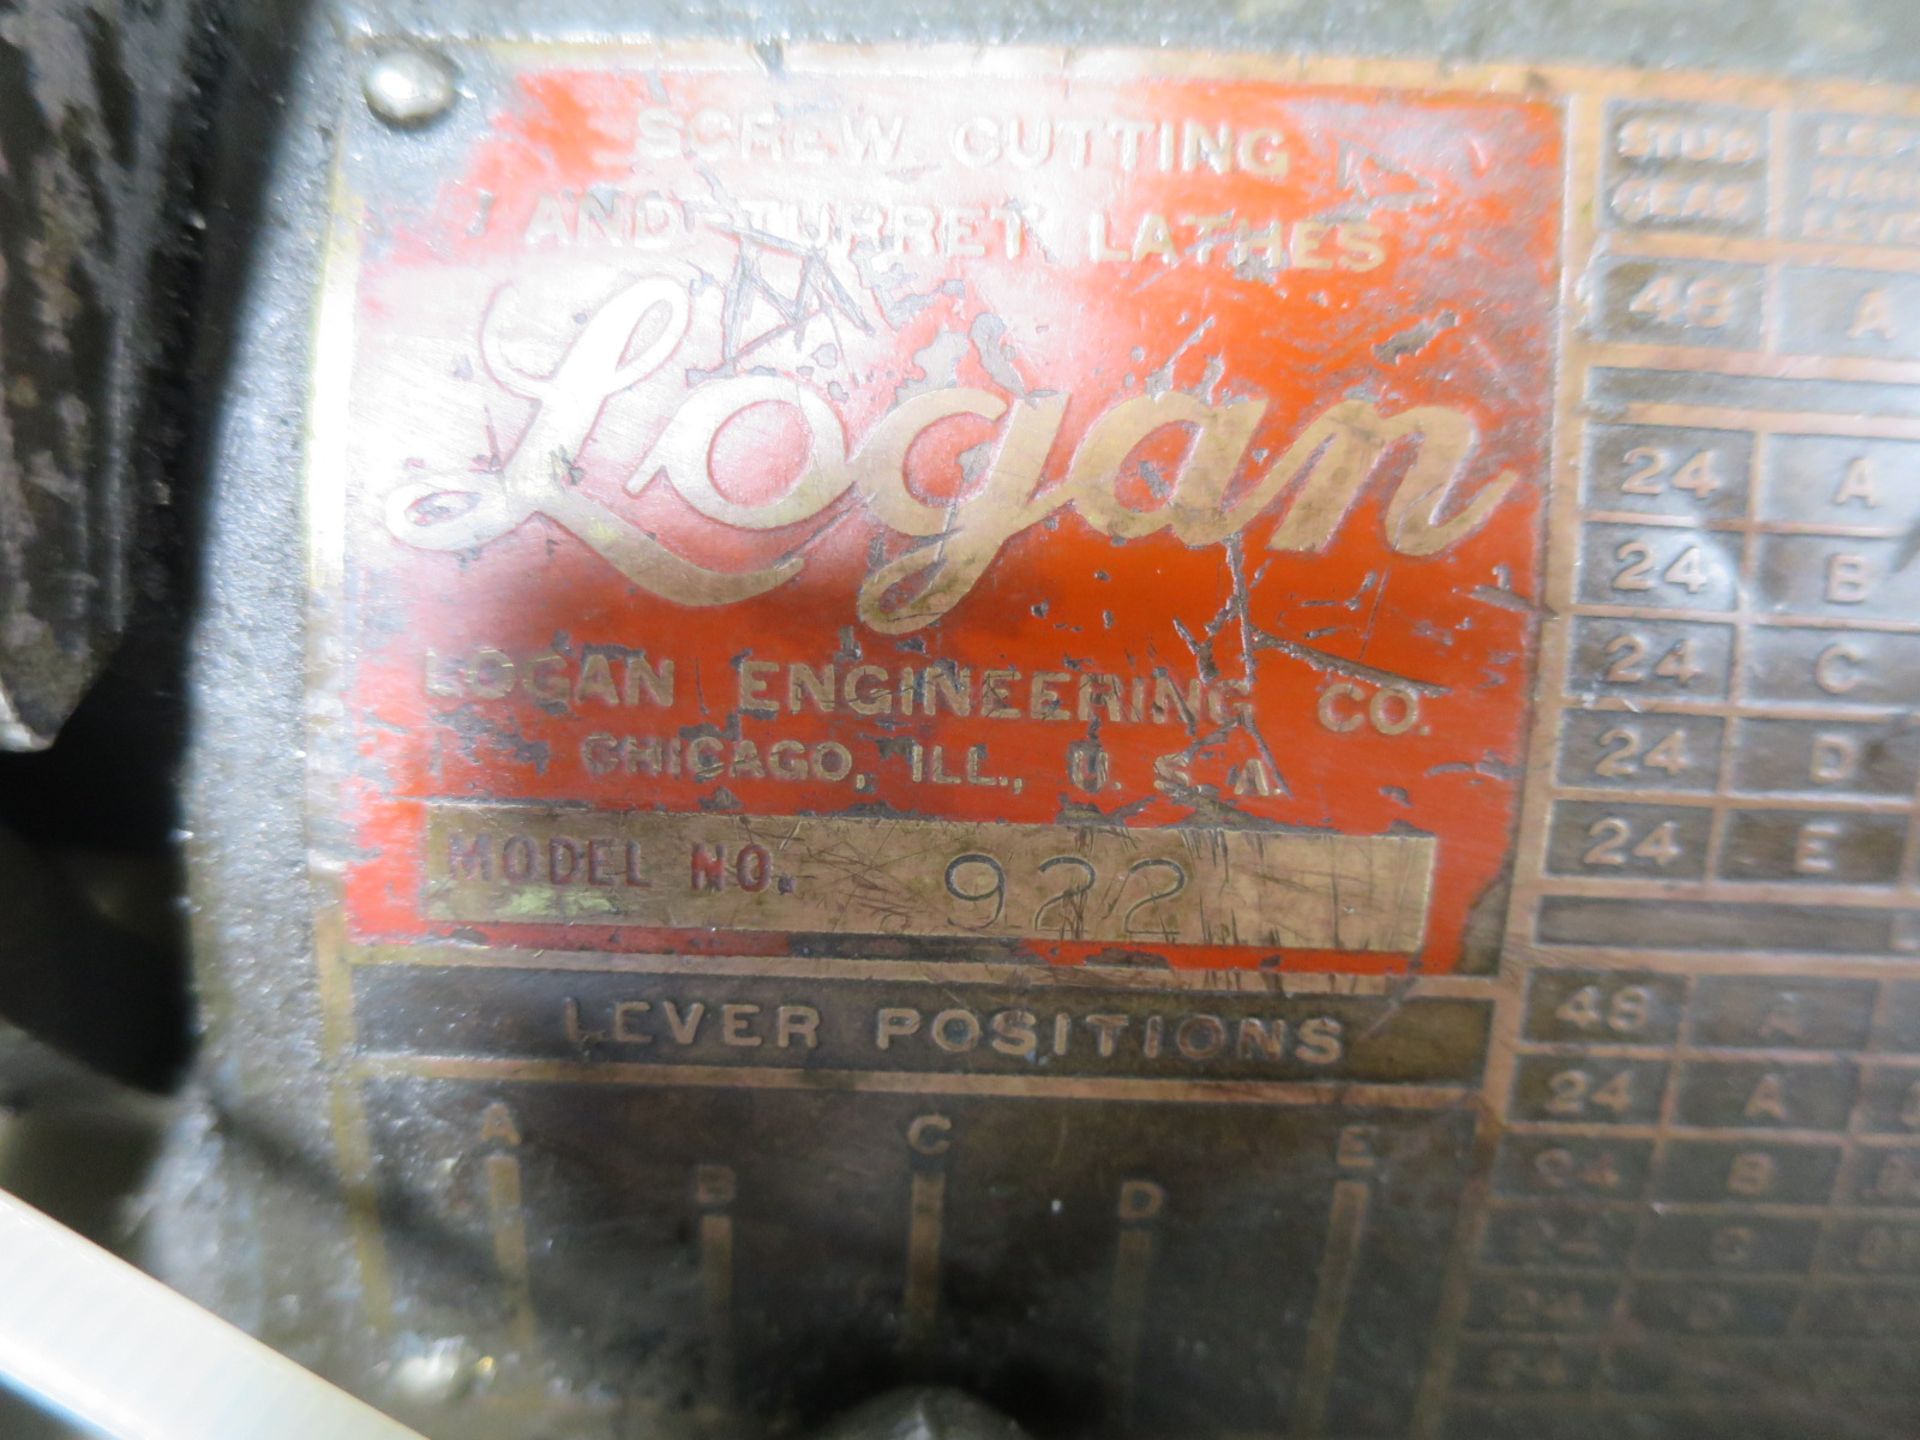 Logan Model 922 Turret Lathe - Image 3 of 6